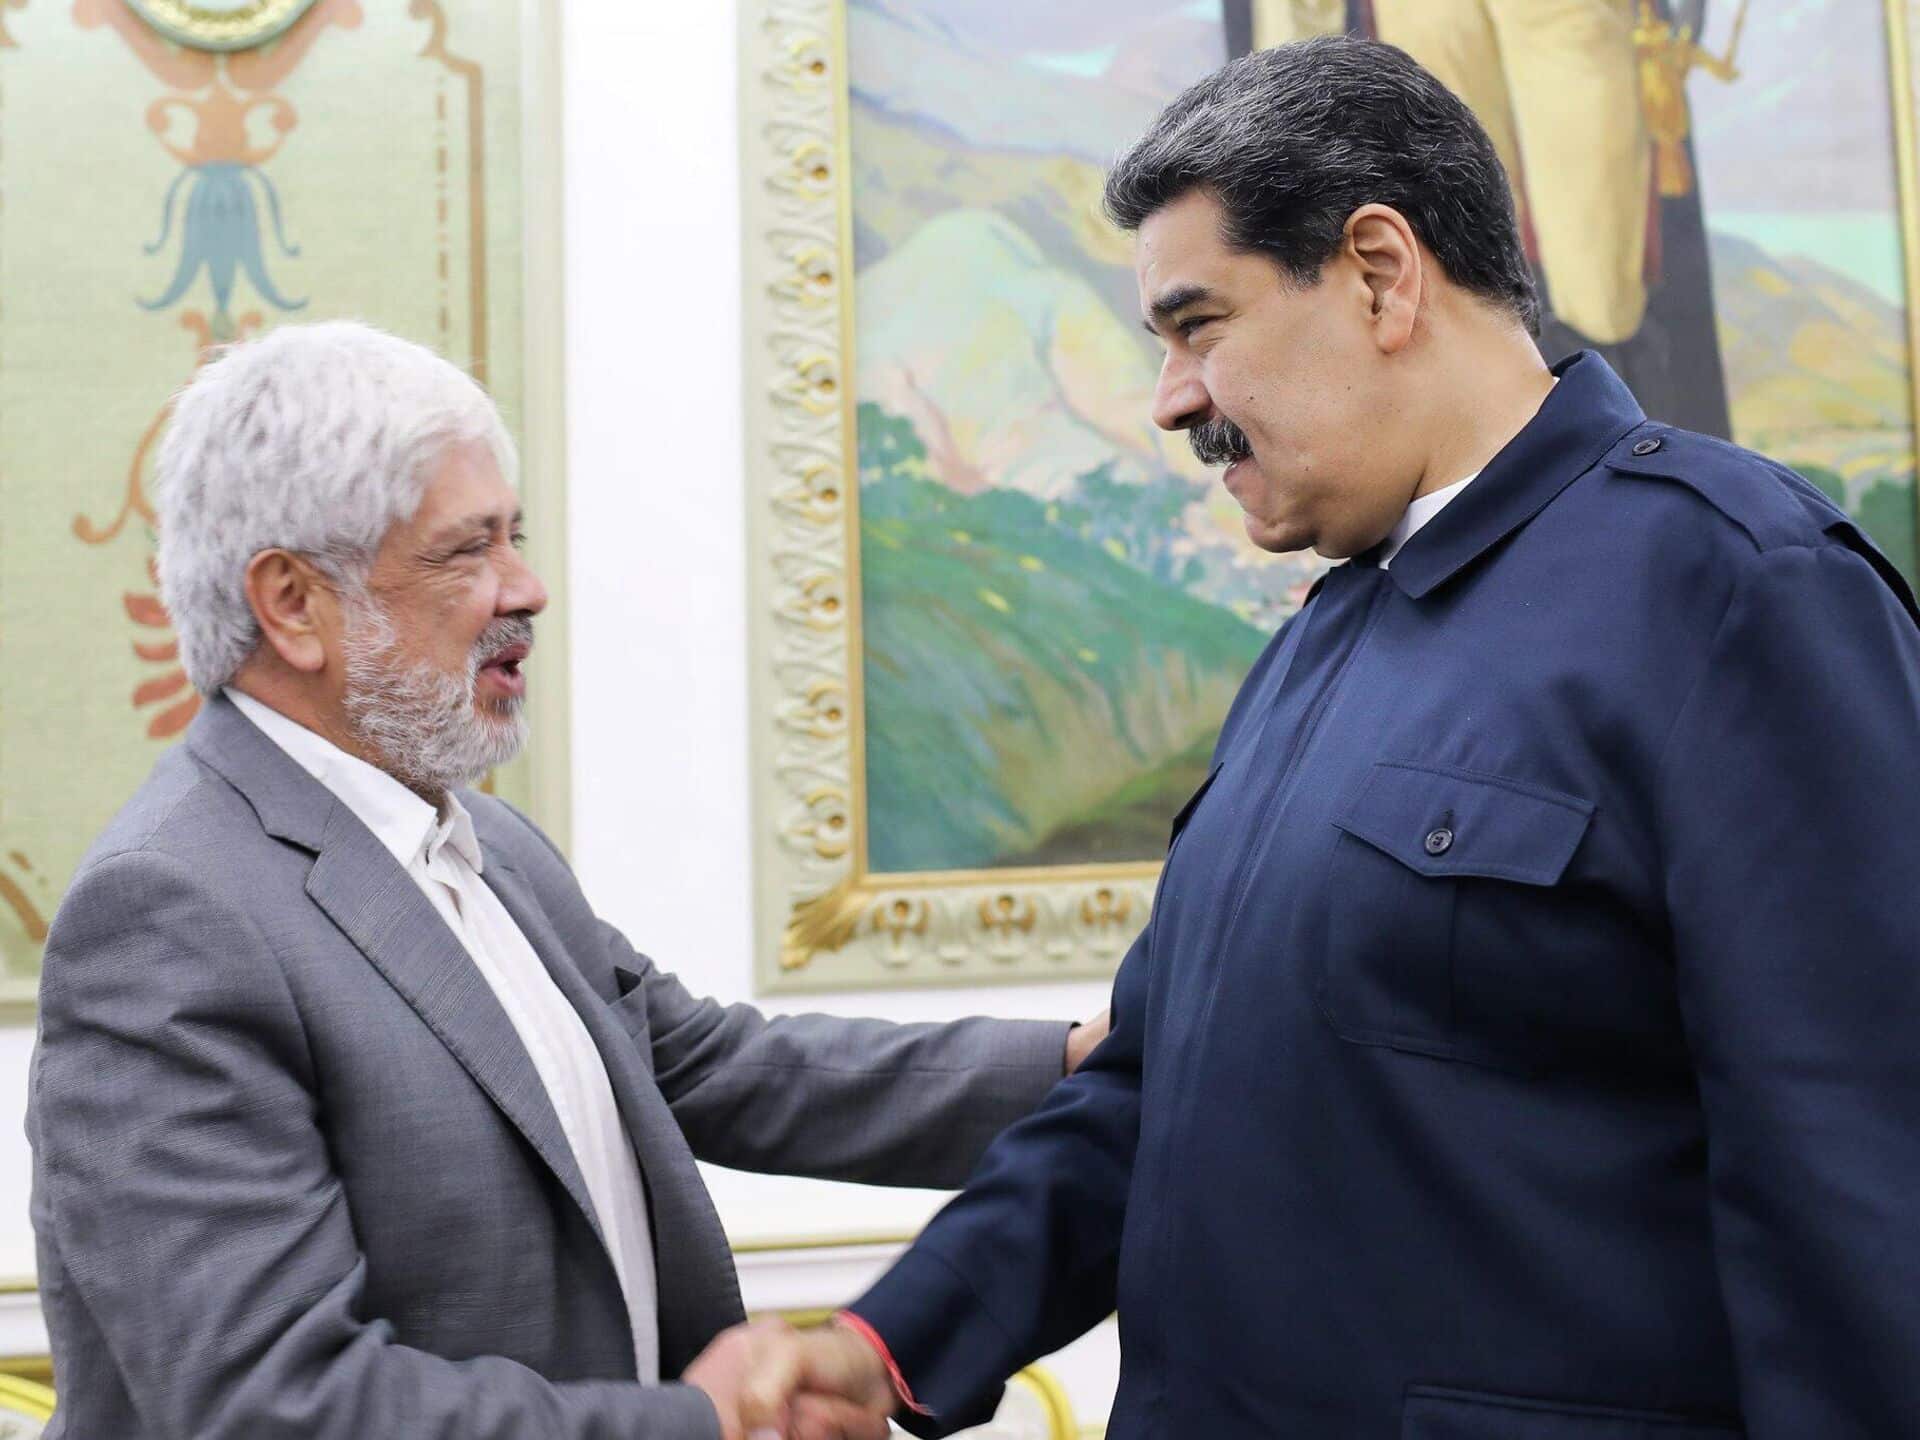 El acuerdo con el que los empresarios colombianos evitarán que Maduro expropie sus empresas en Venezuela